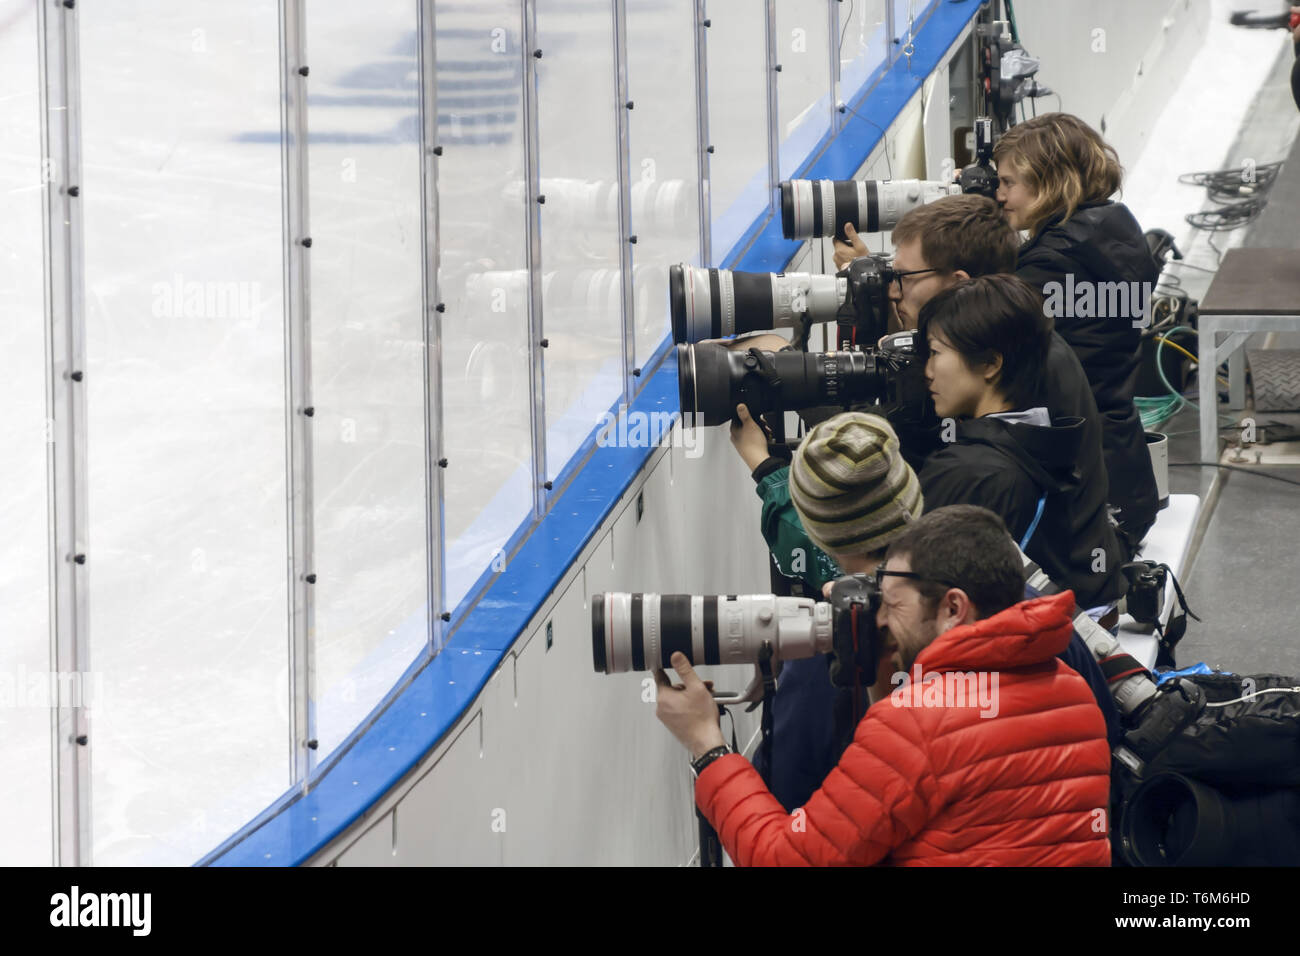 Sochi - Adler, el Parque Olímpico, región de Krasnodar / Federación de Rusia, 12 de marzo de 2014. Ensayo fotográfico de deportes. Foto de stock